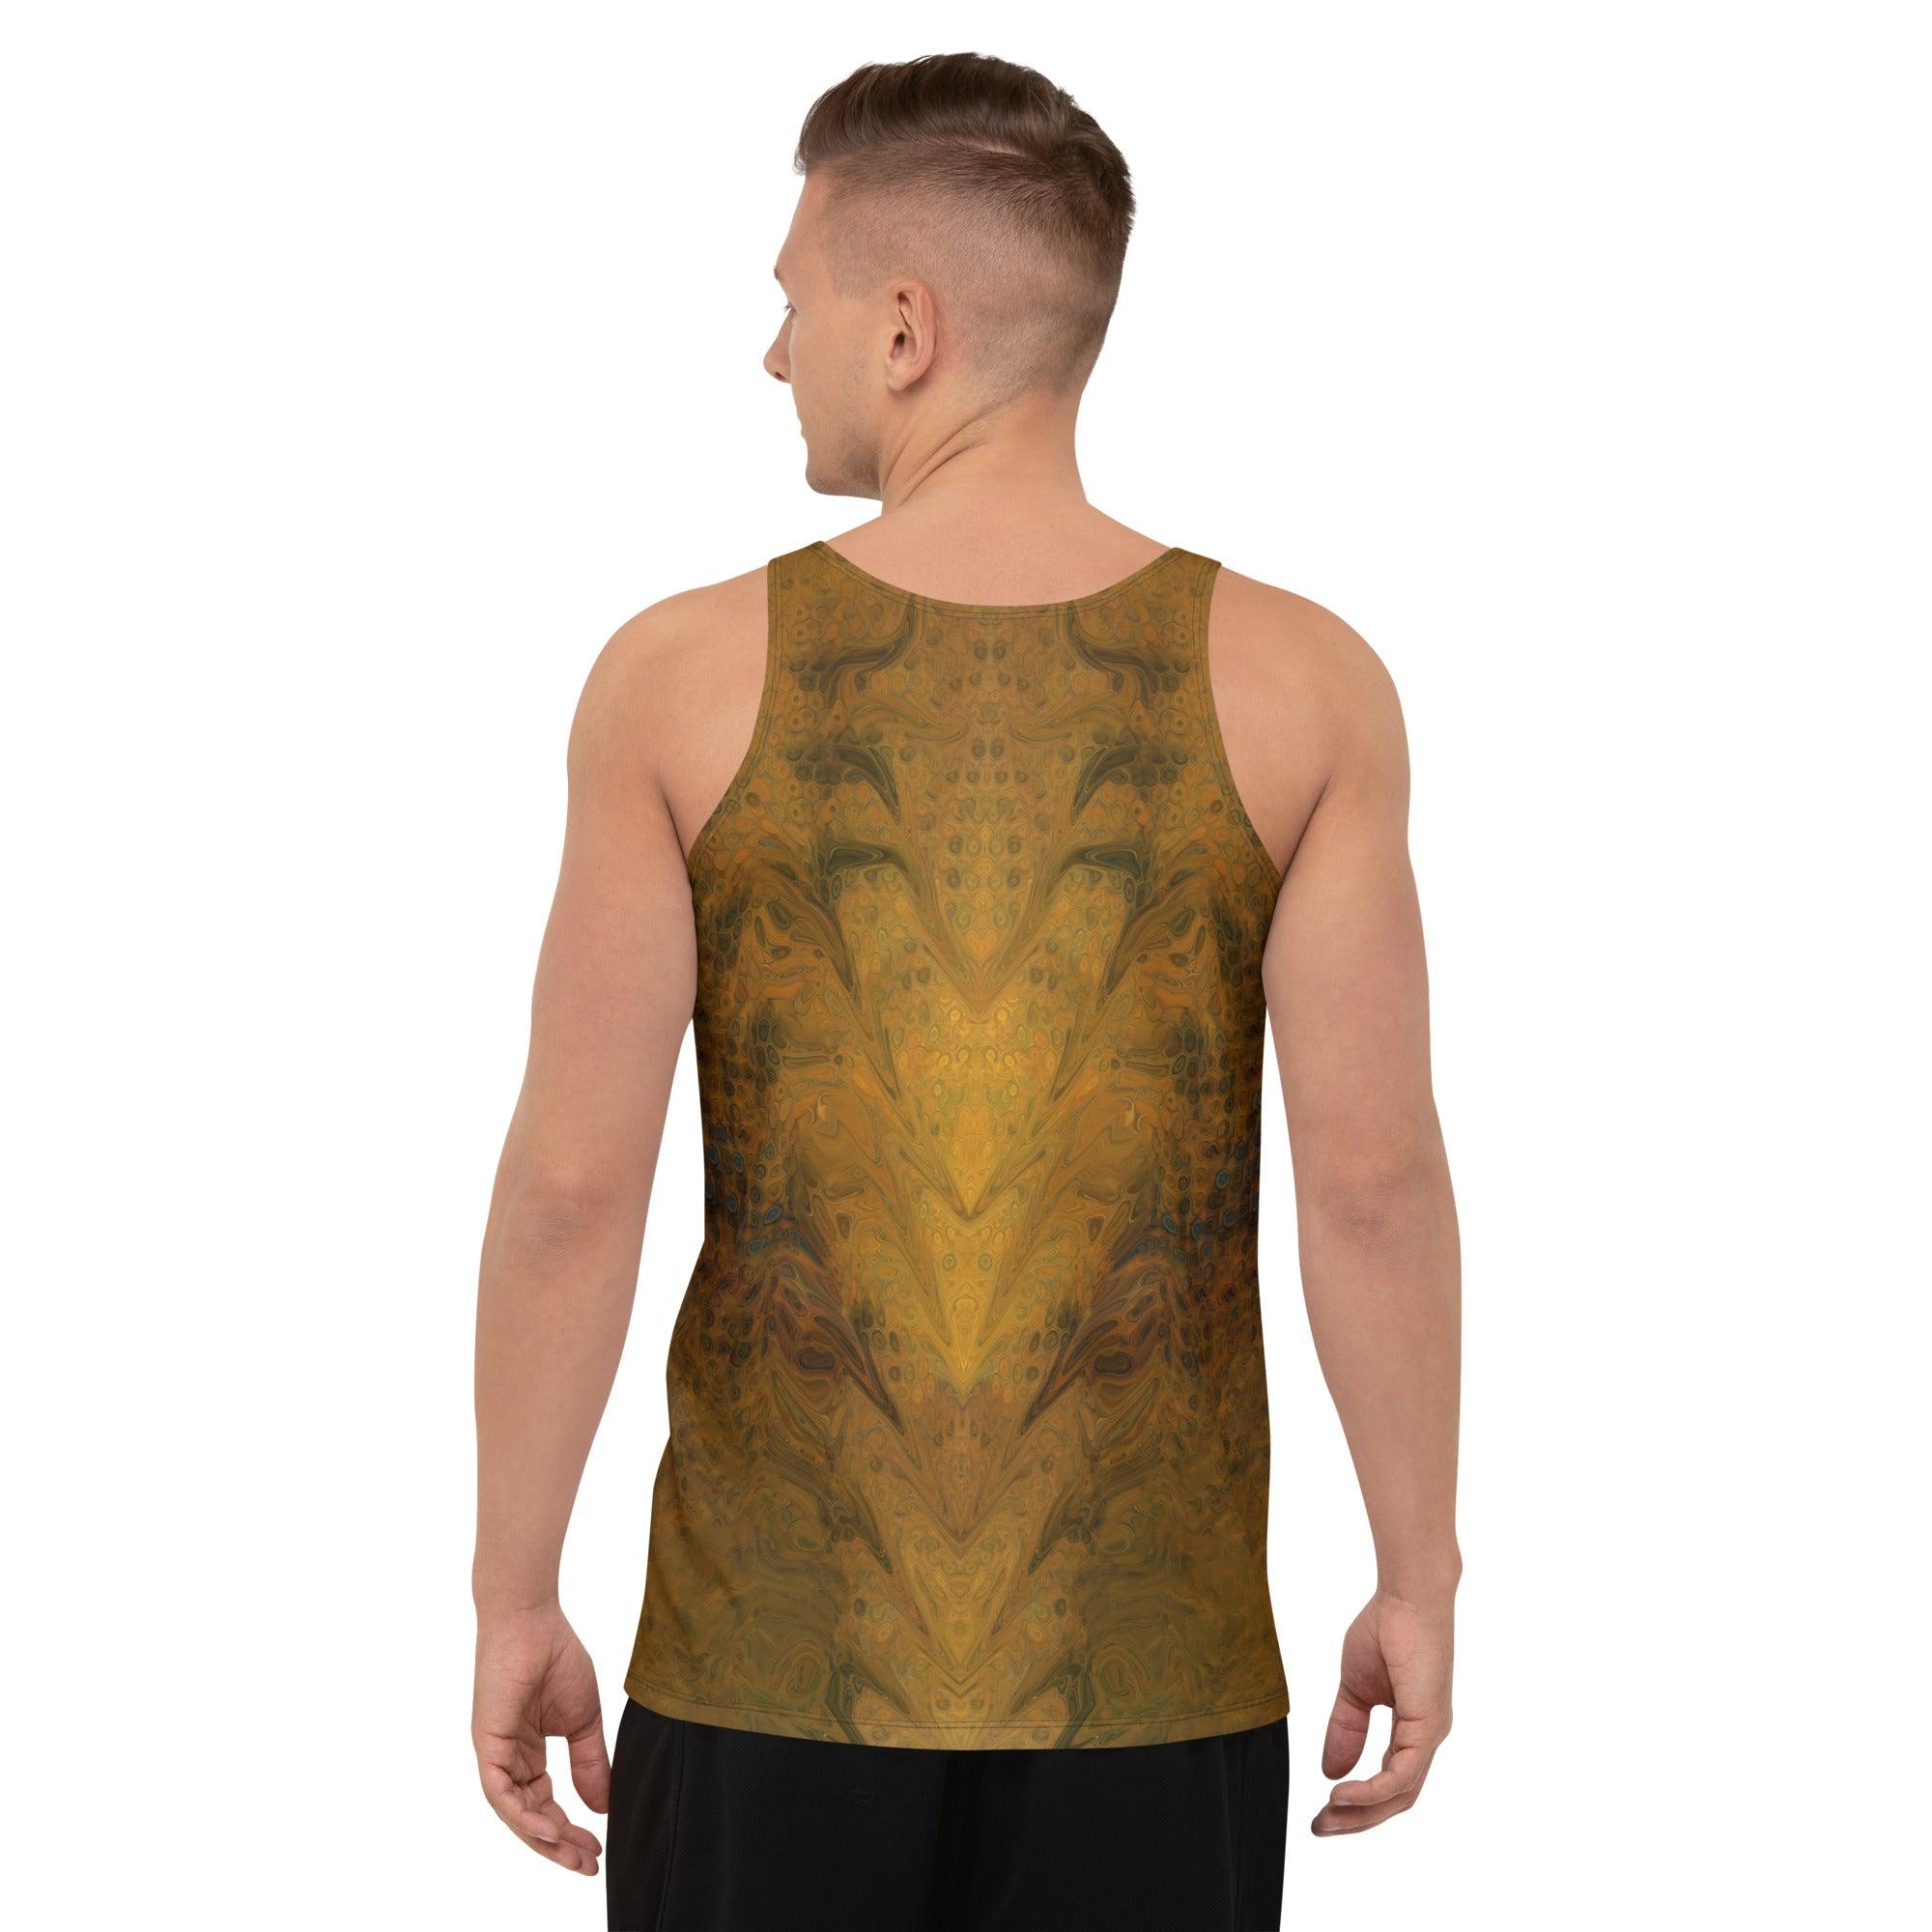 Men's Sleeveless Shirt in Radiant Reflections IV Design.